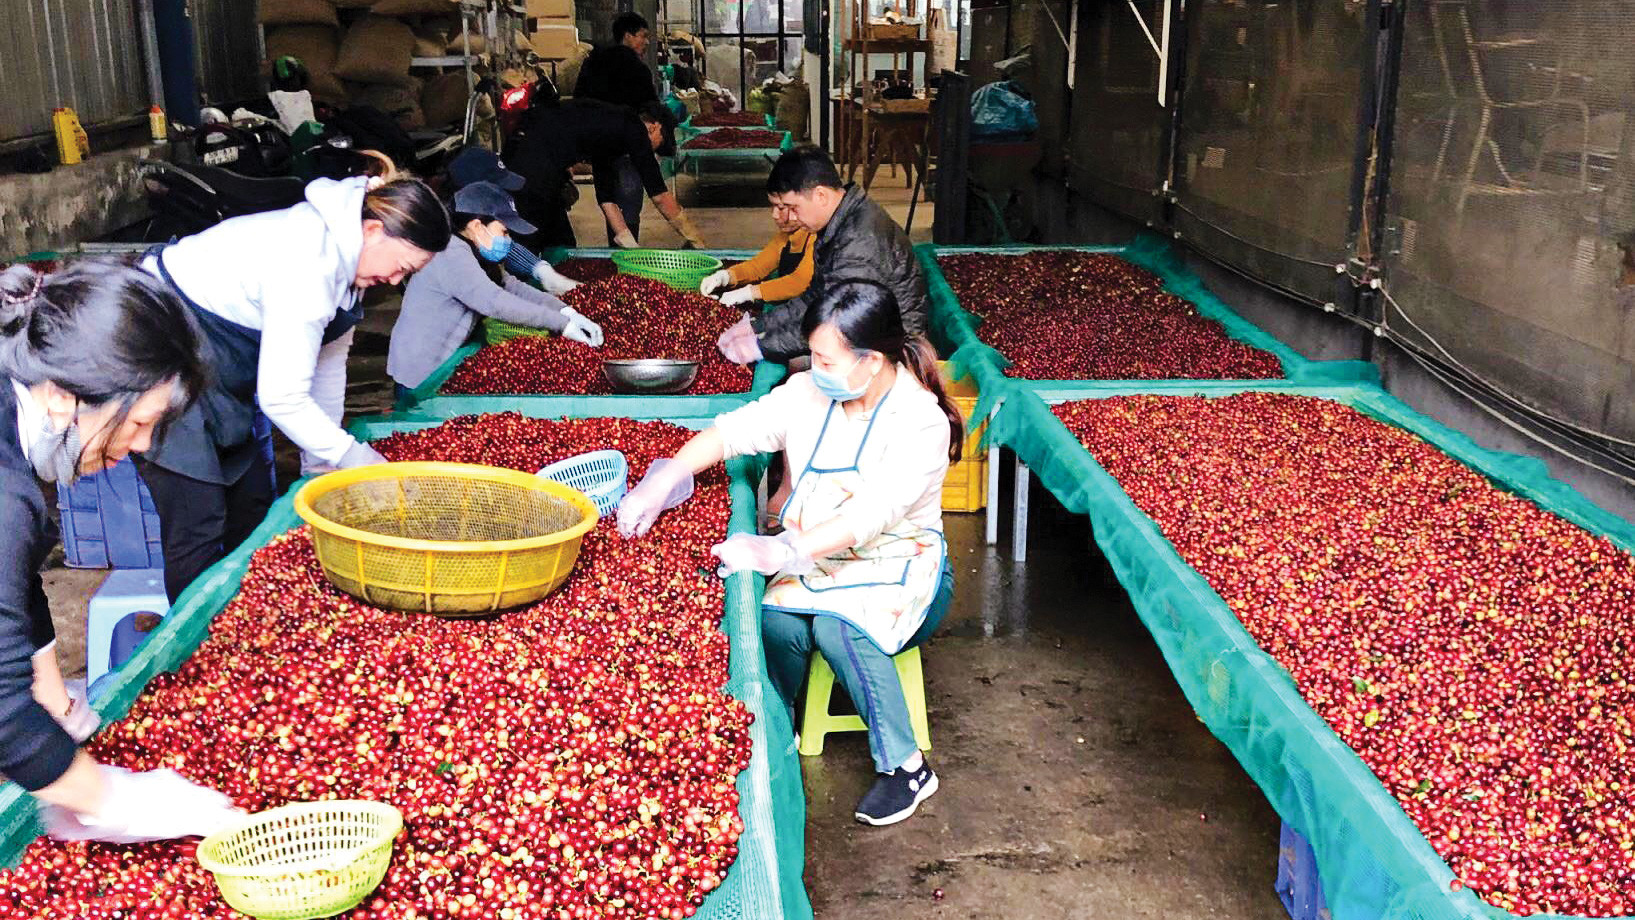 Giá cà phê cao kỷ lục, nông dân không còn hàng để bán - Báo Lâm Đồng điện tử